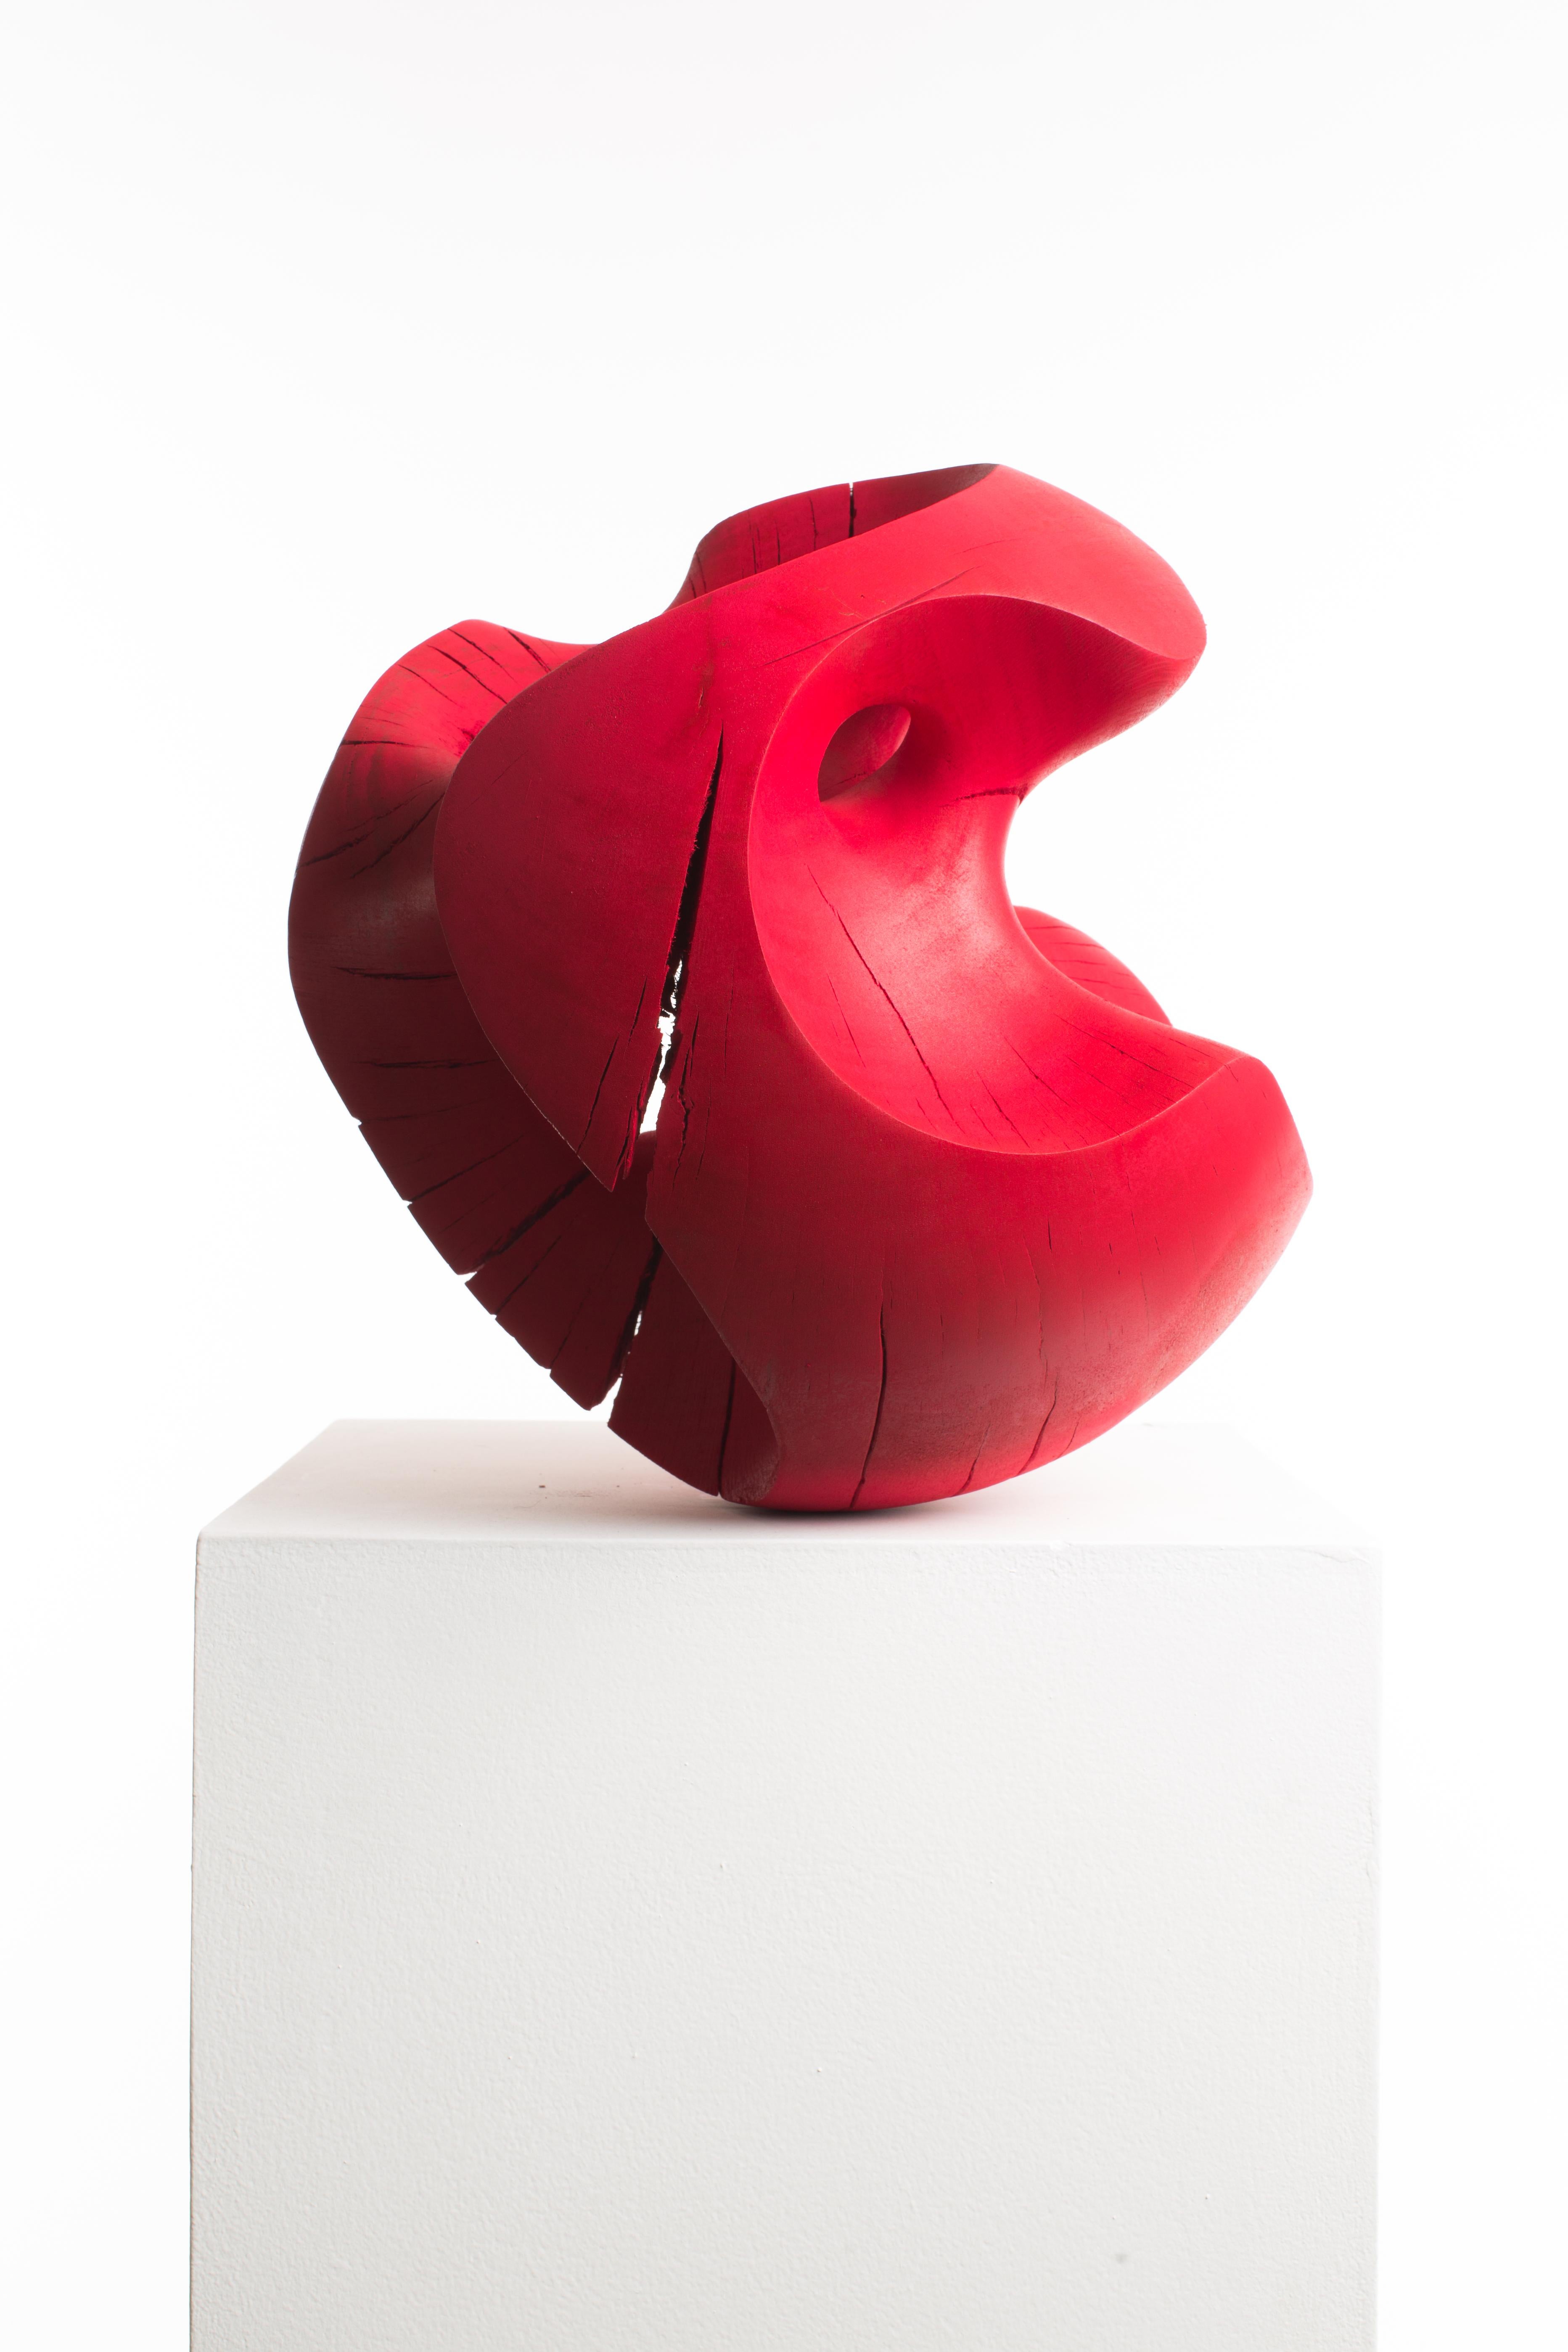 Driaan Claassen For Reticence, Abstract Geometric Sculpture, Wooden Sphere 007 3